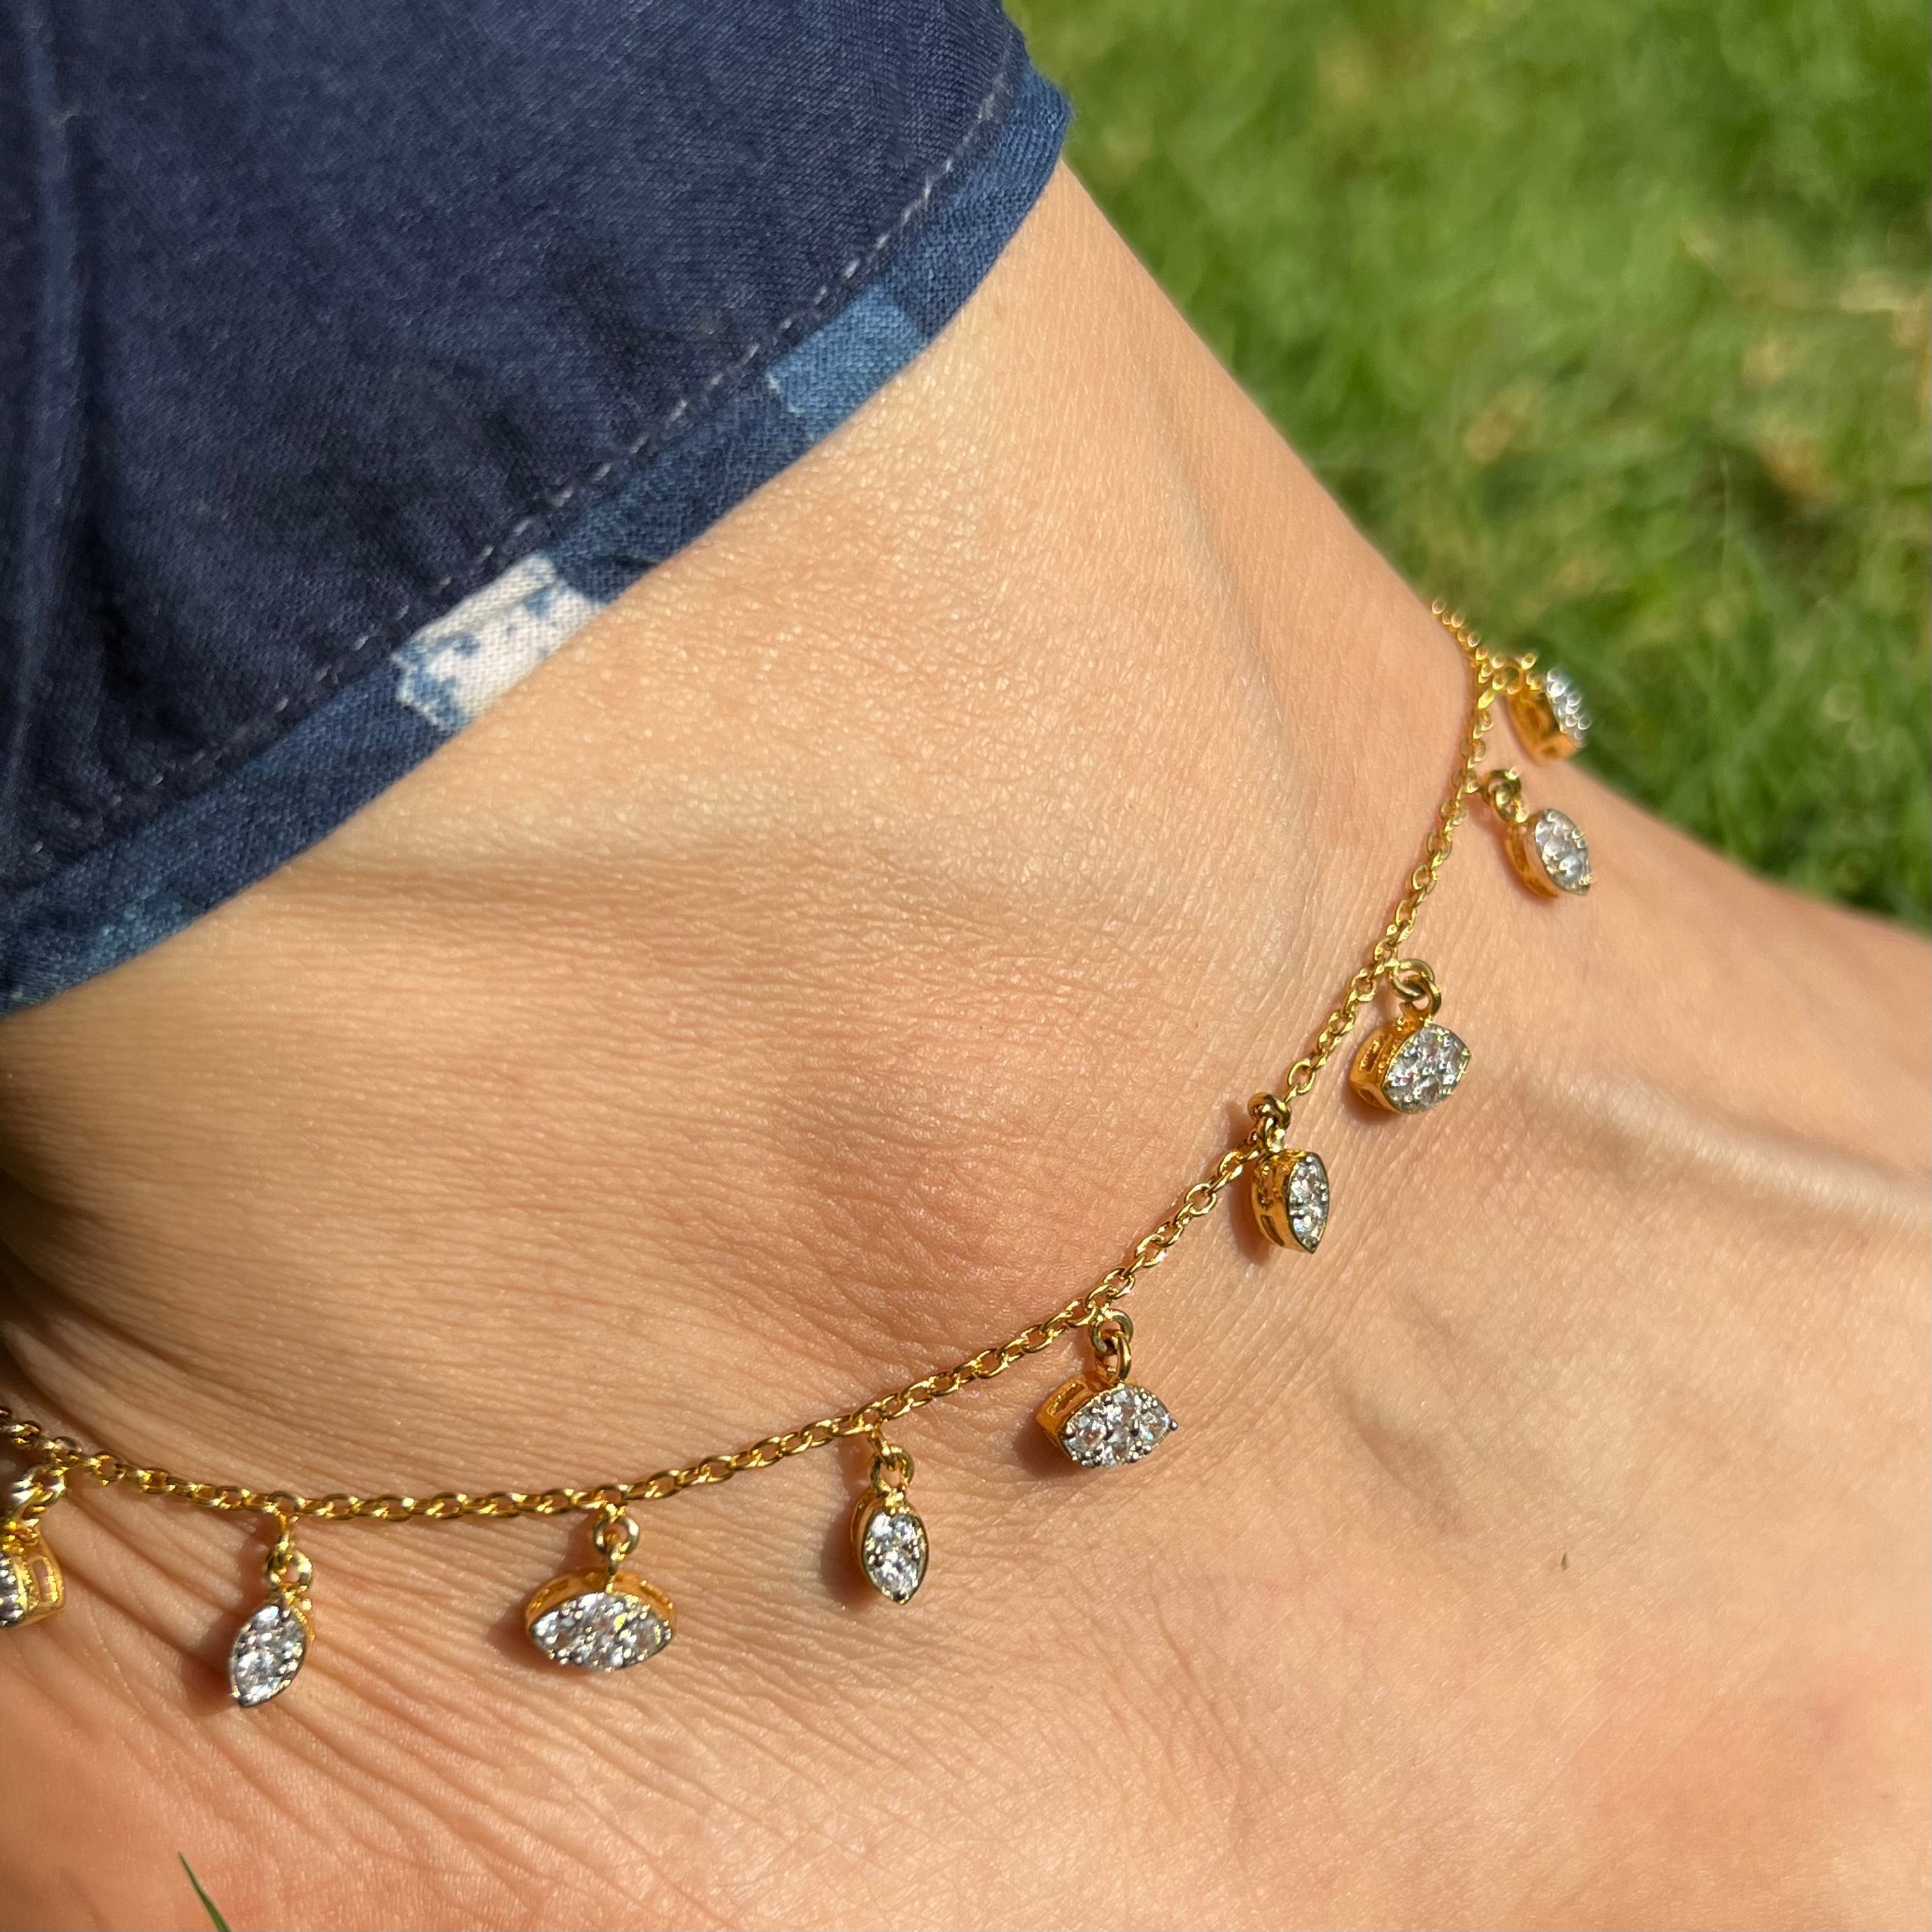 Buy Anklet for Men, Men's Anklet, Bronze Tube Bead, Black Cord, Anklet for  Men, Gift for Him, Men's Ankle Bracelet, Ankle Bracelet, Minimalist Online  in India - Etsy